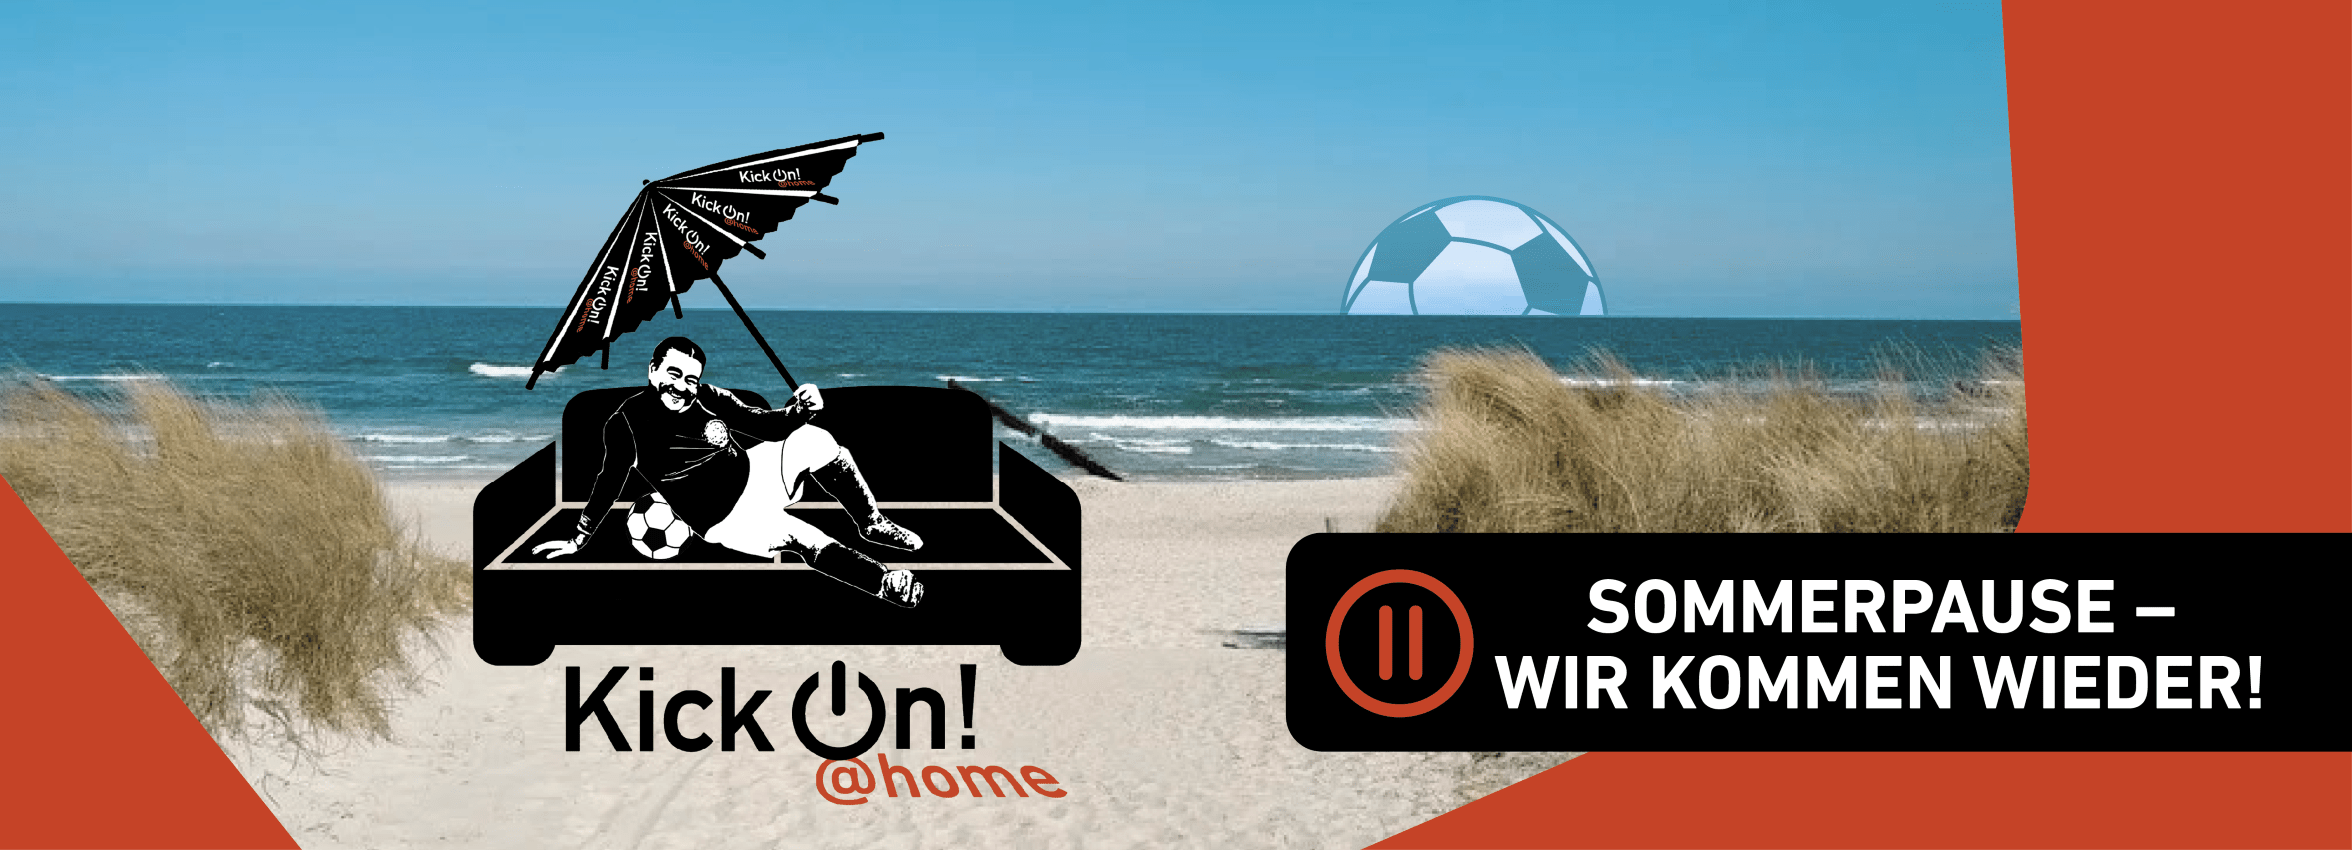 Fußballer auf Sofa mit Sonnenschirm am Strand. Im unteren Bereich des Bildes steht: KickOn @Home - Sommerpause - wir kommen wieder.